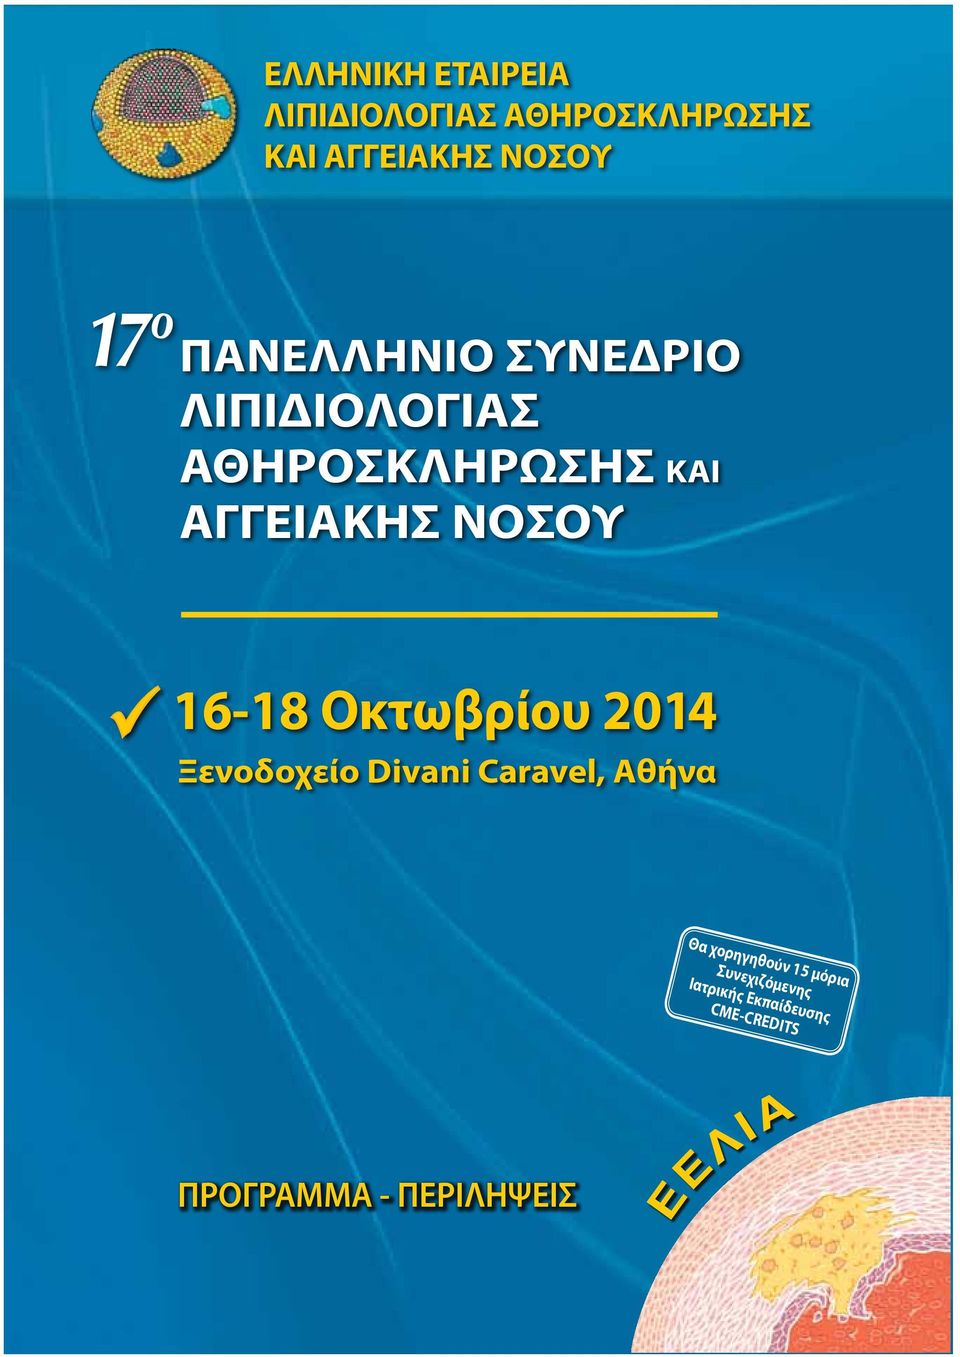 16-18 Οκτωβρίου 2014 Ξενοδοχείο Divani Caravel, Αθήνα Θα χορηγηθούν 15